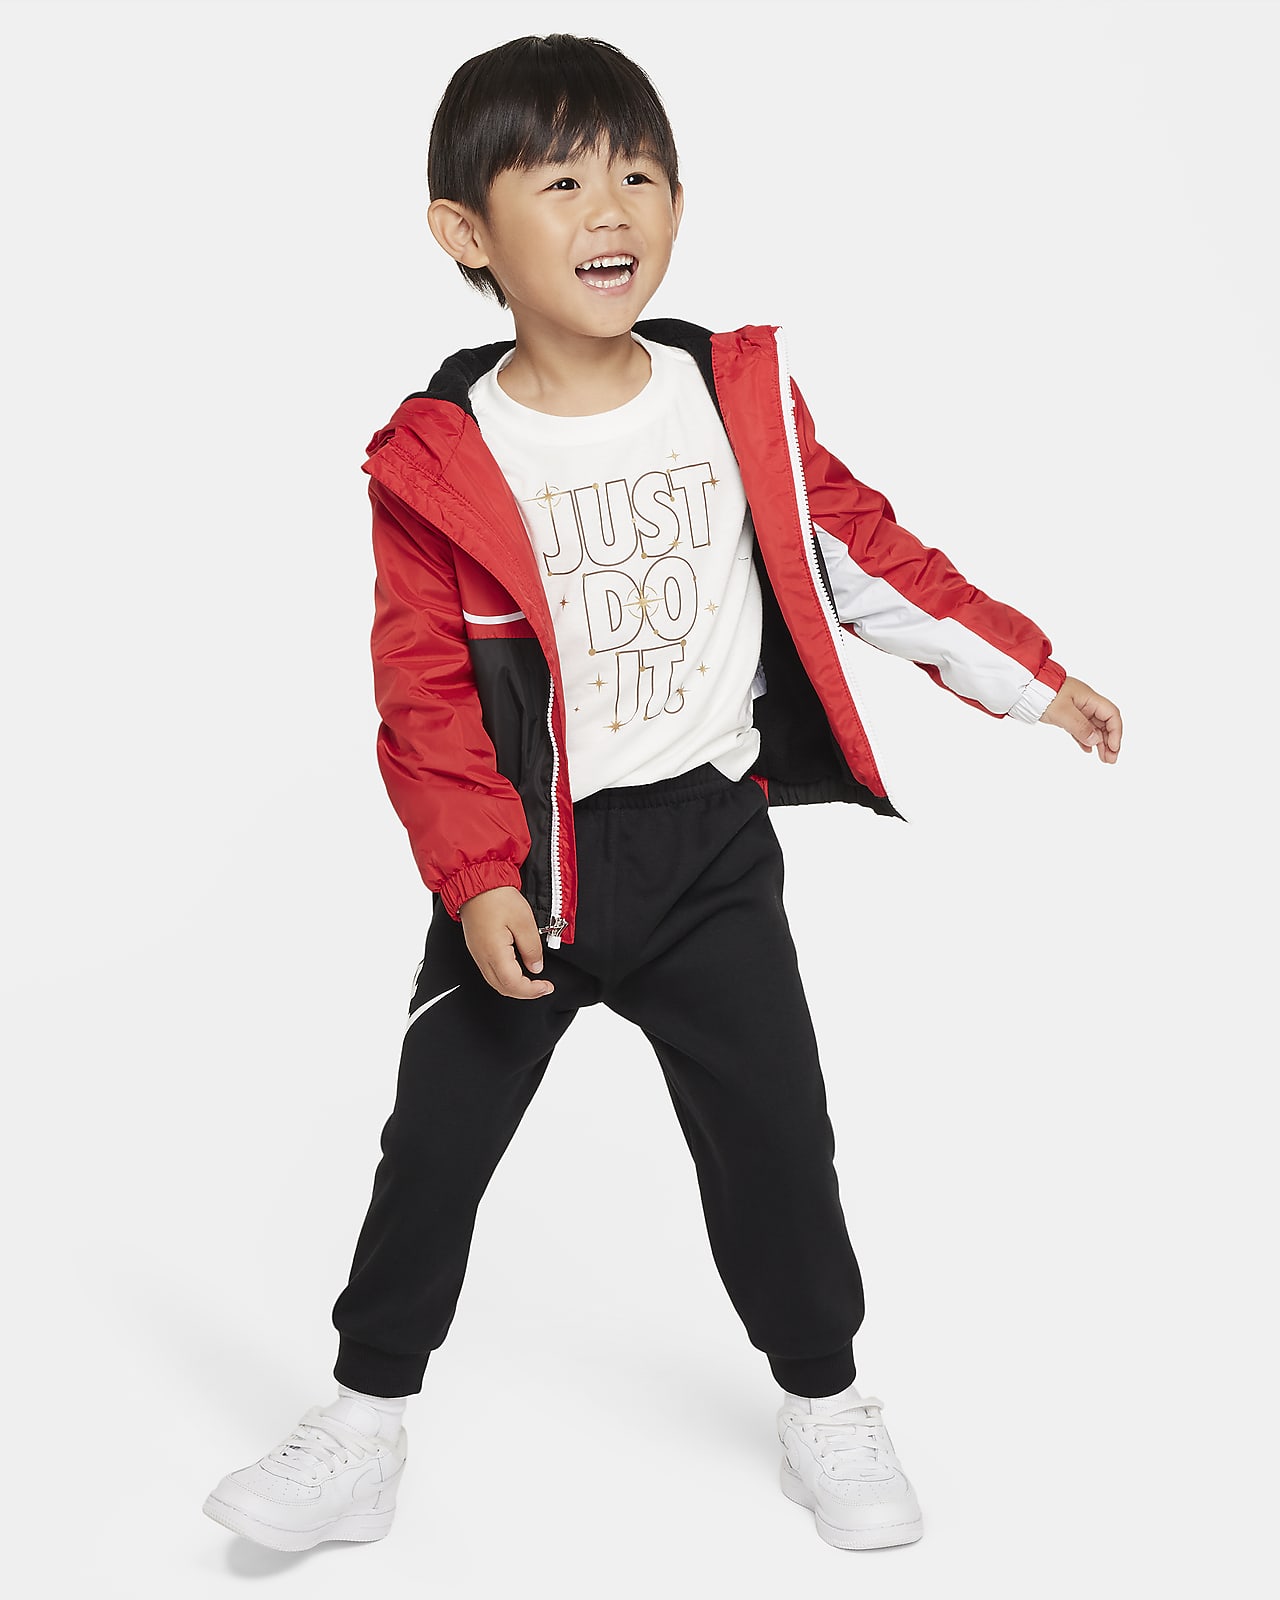 Nike Toddler Jacket. Full-Zip